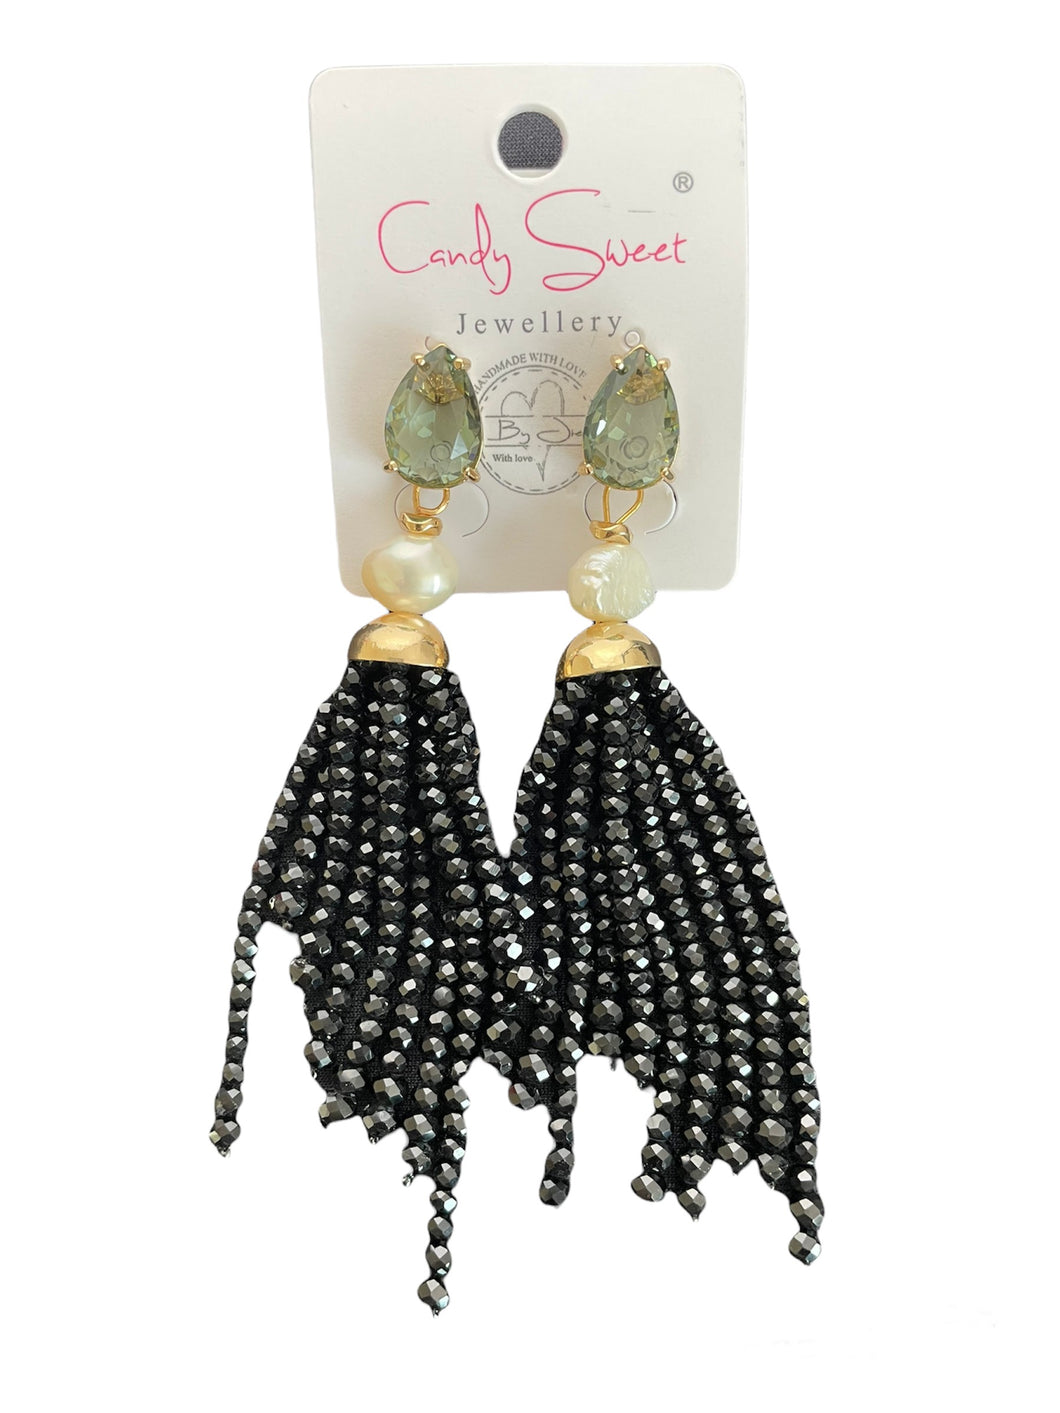 Oorbellen Black & Pearls zijn mooie, feestelijke oorbellen, met groene crystal steen, witte parels en zwarte beads kraaltjes. Oorbellen Black & Pearls zijn een echte eyecatcher en hebben een lengte van ca. 9cm.